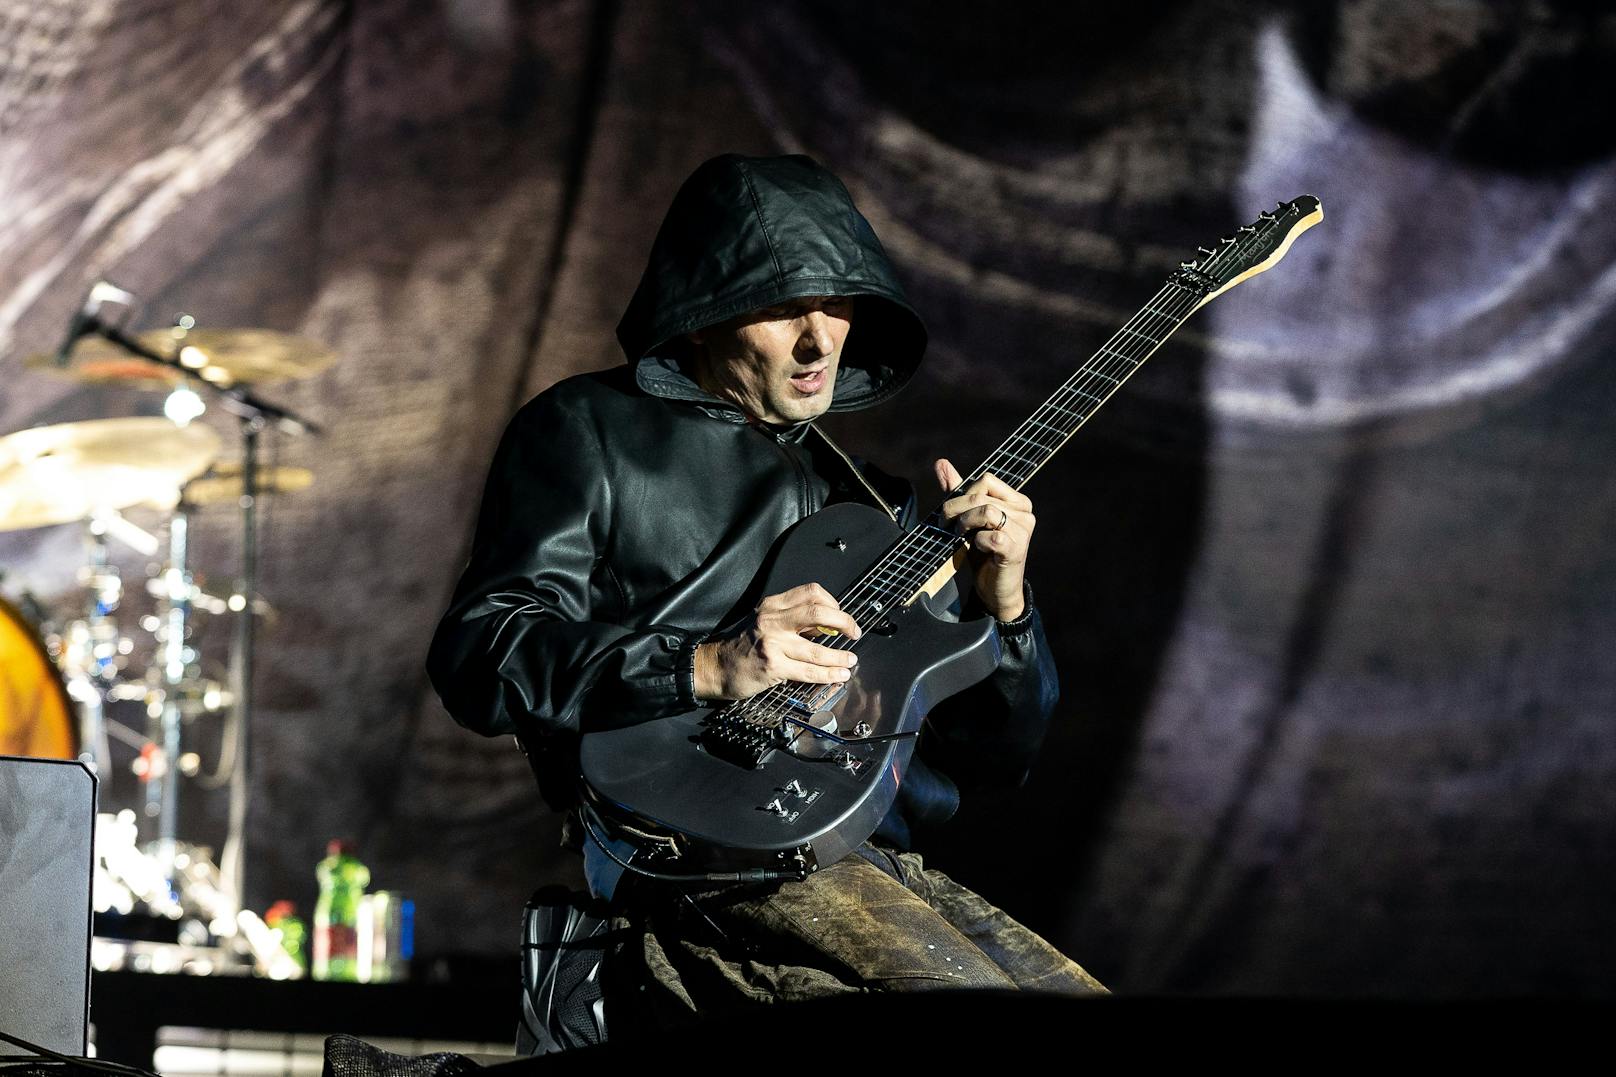 Sänger Matthew Bellamy von der Band "Muse" während eines Konzertes auf der "Blue Stage".